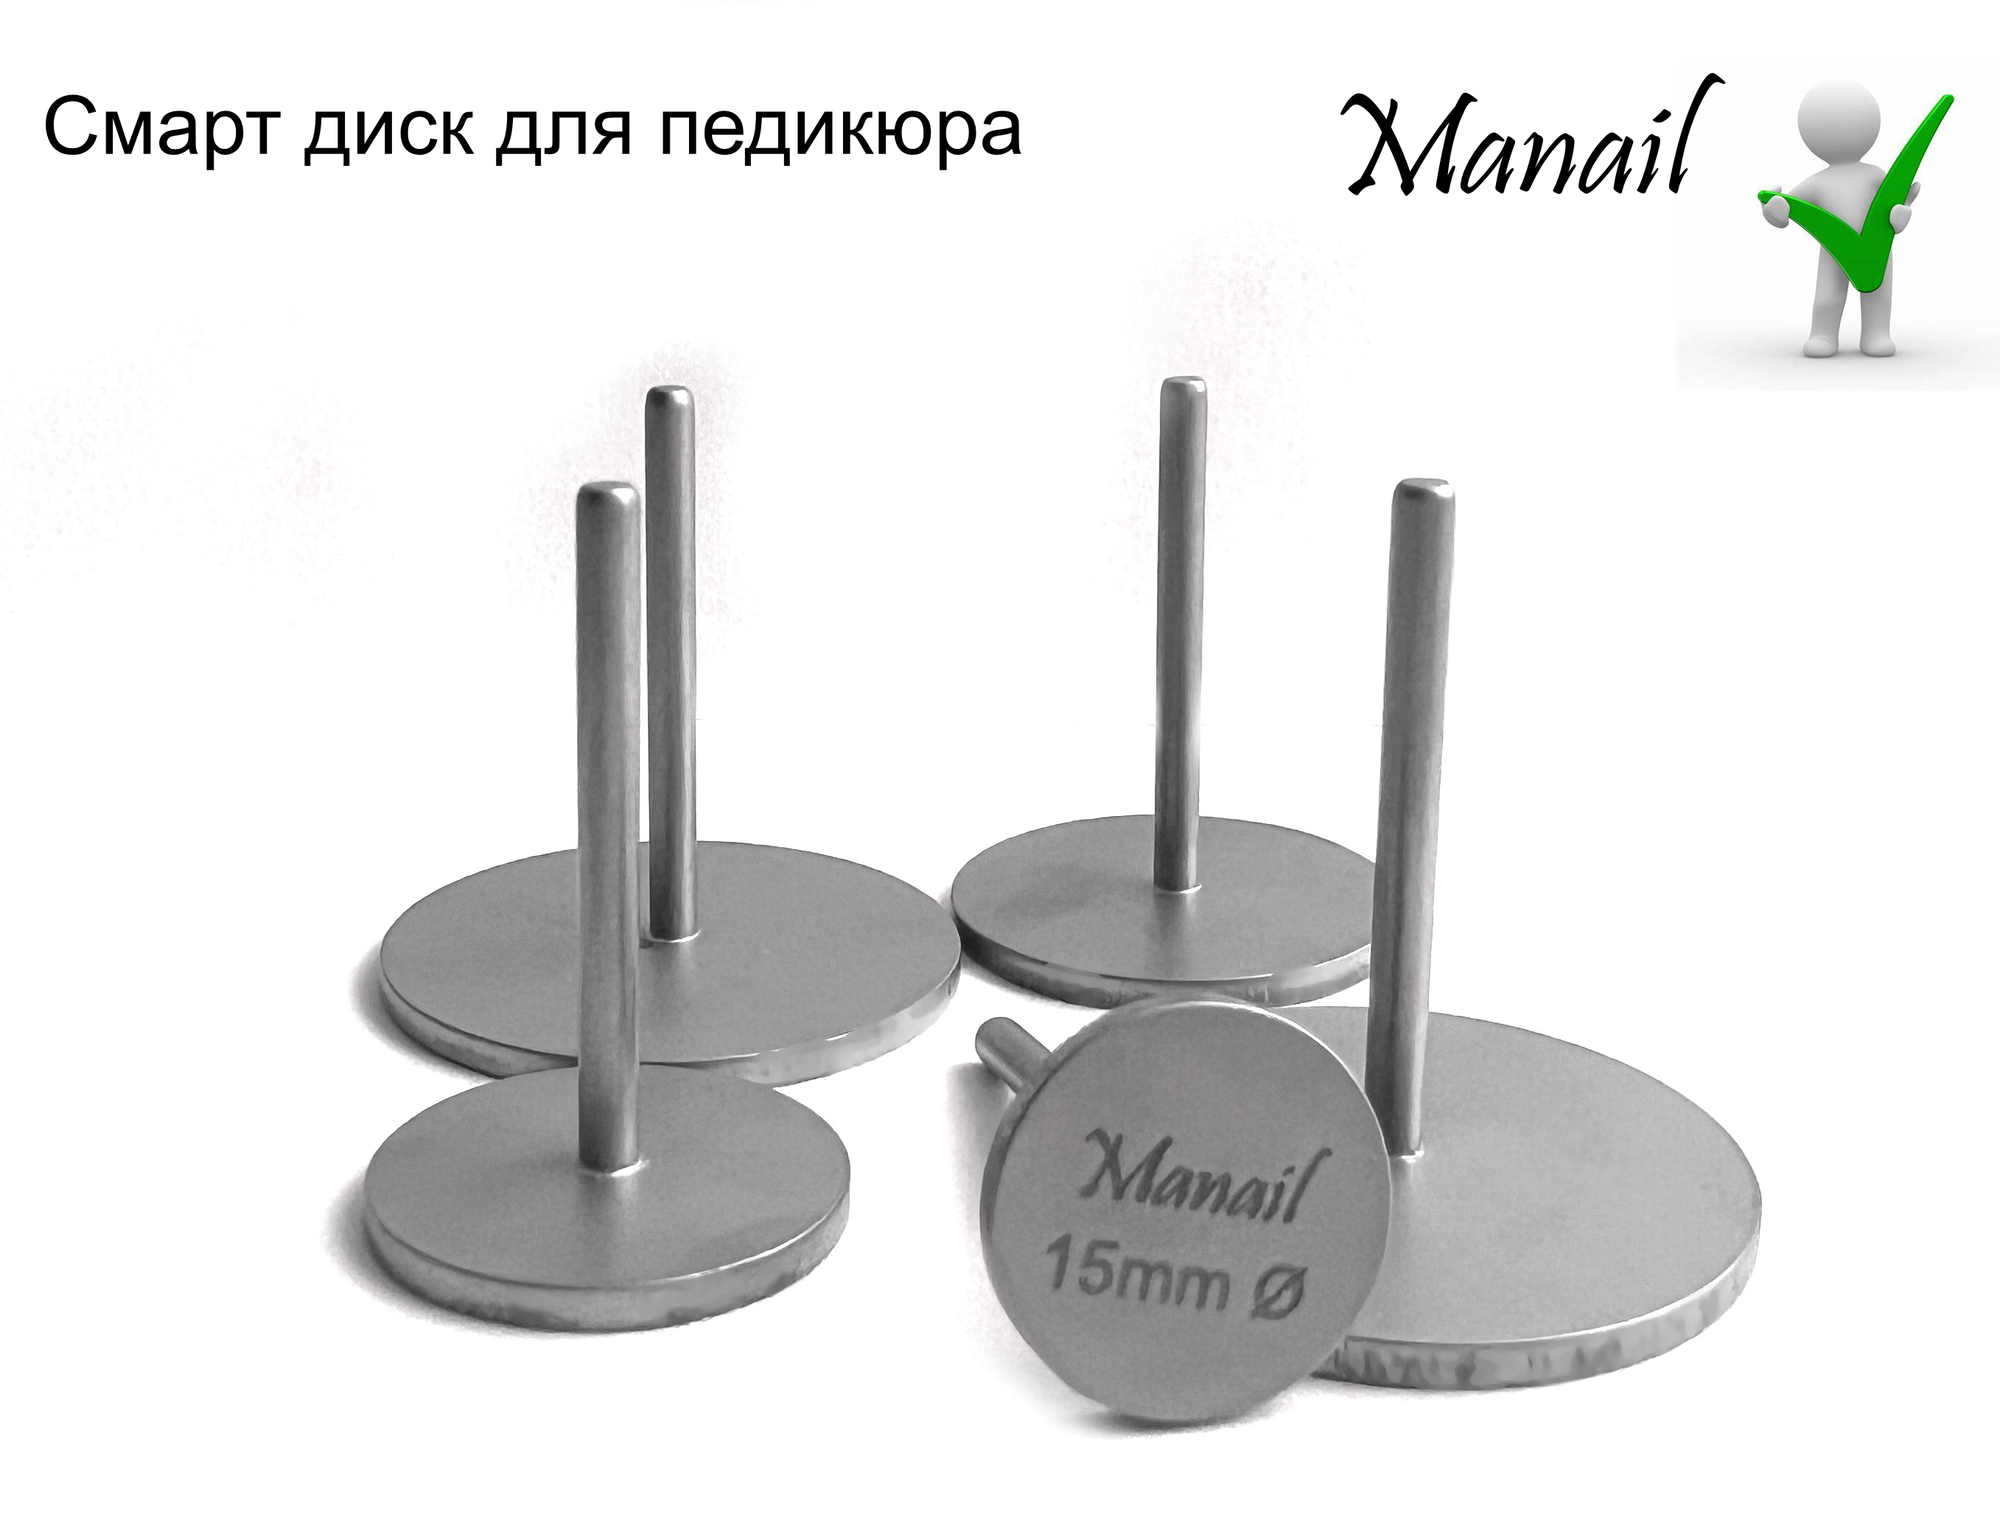 Смарт диск Manail для педикюра, диаметр 15 мм,